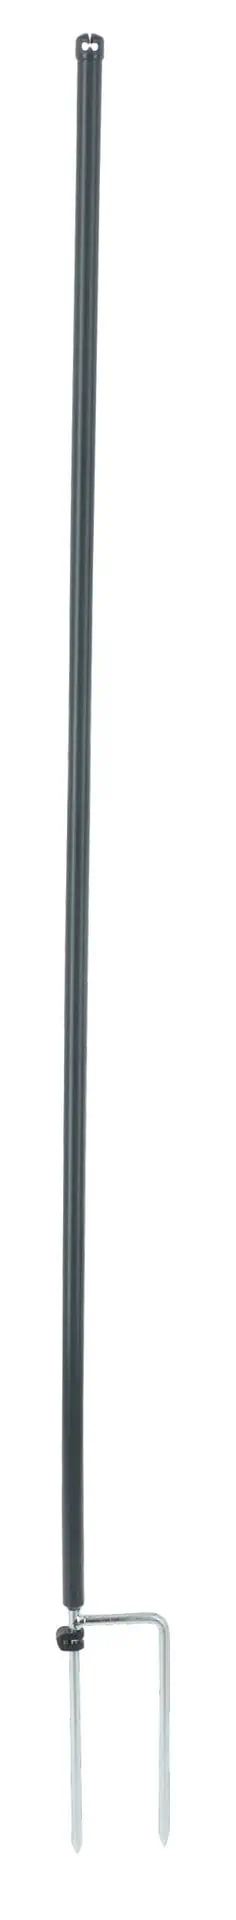 Palo sostitutivo per reti da pascolo PA 122 cm doppia punta, grigio